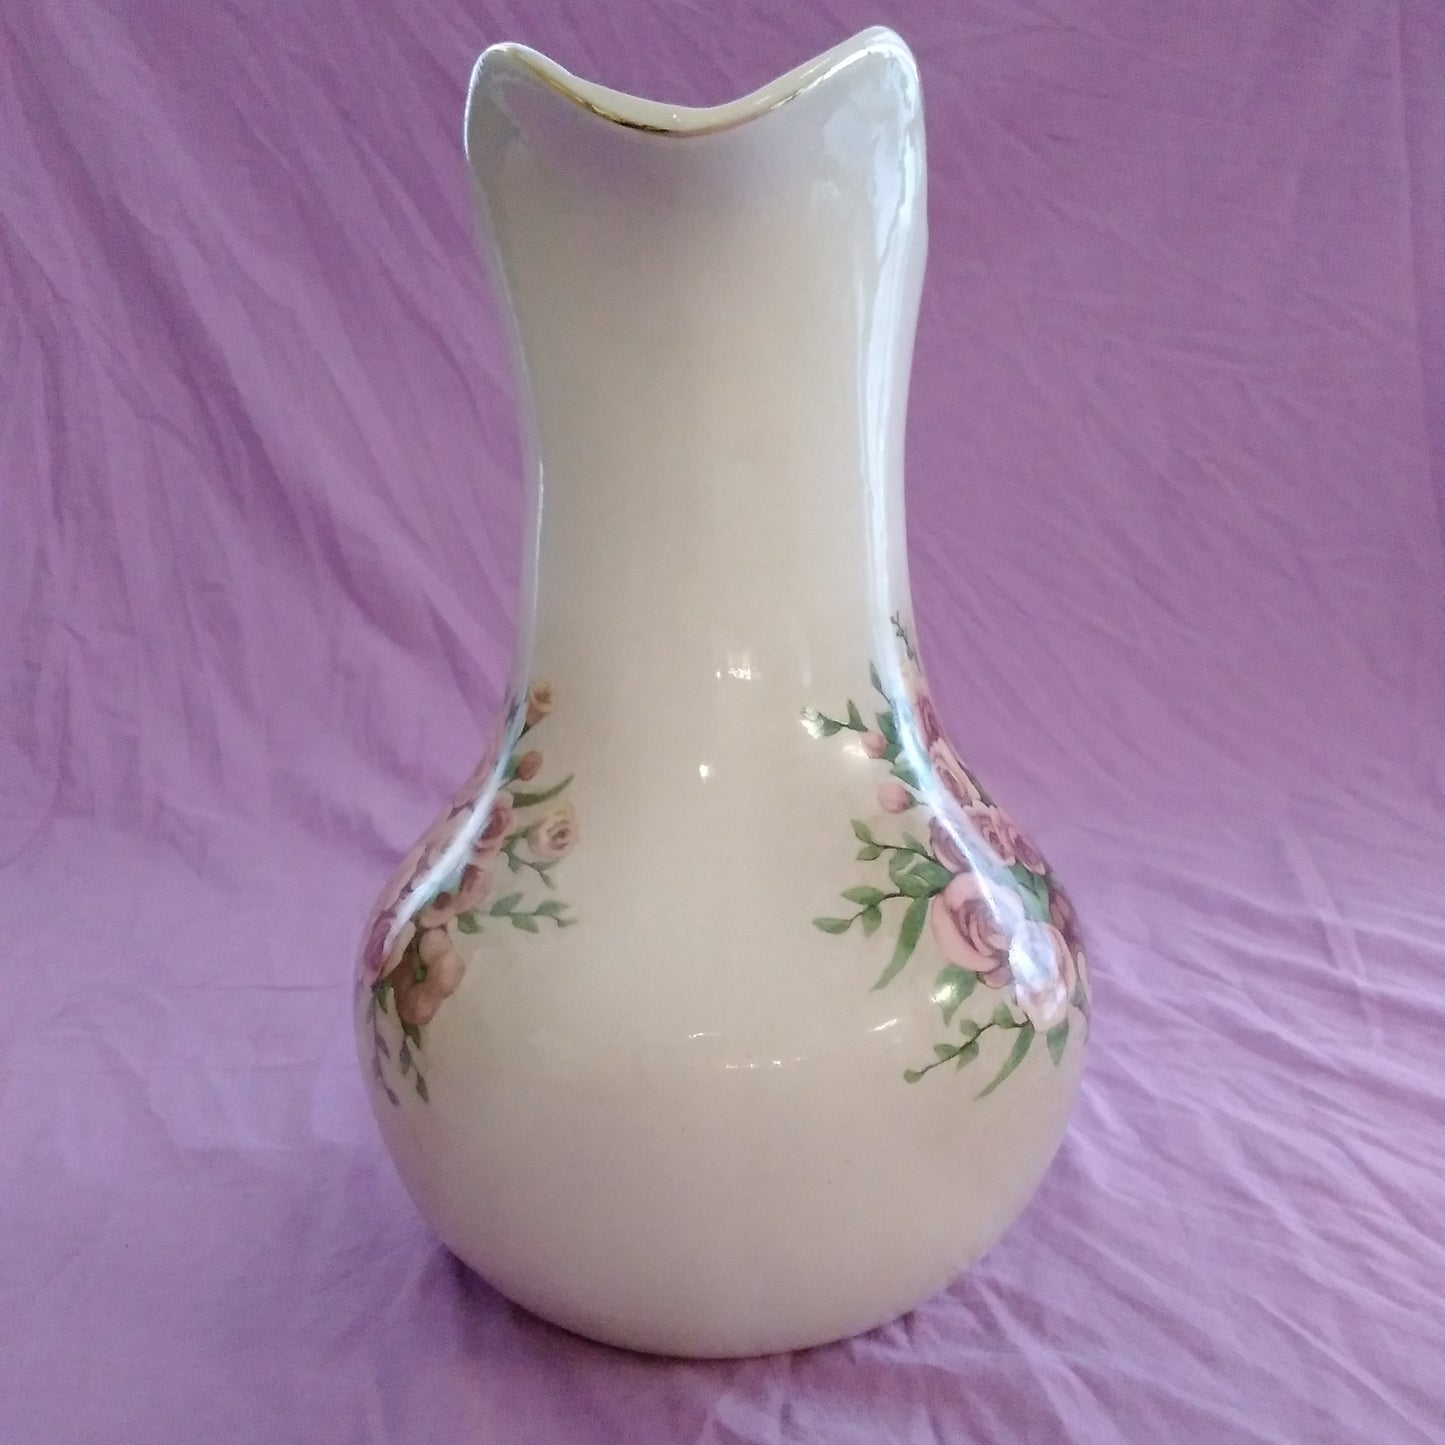 Vintage Belk "All For You" Large Floral Bisque Porcelain Pitcher